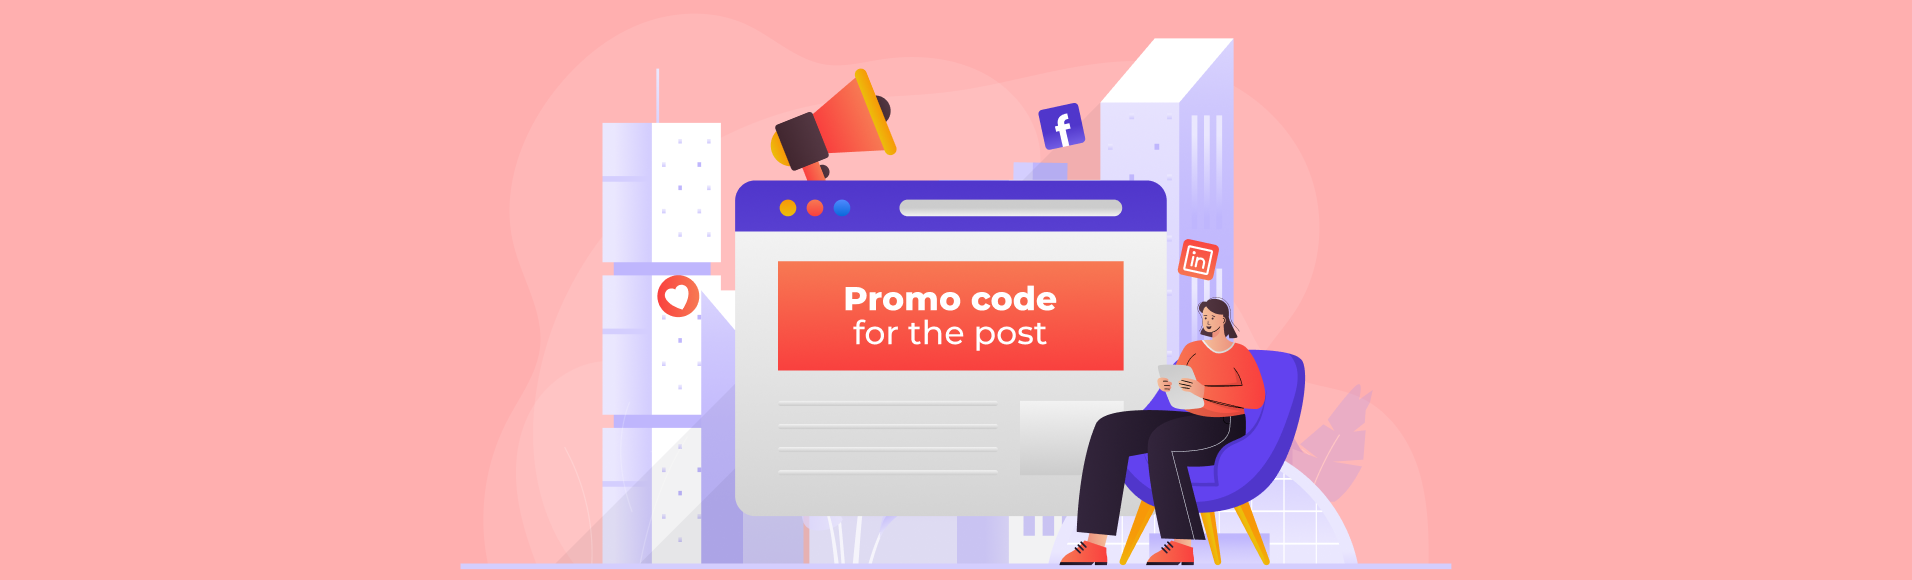 Ketentuan program pemasaran Kode promo untuk posting